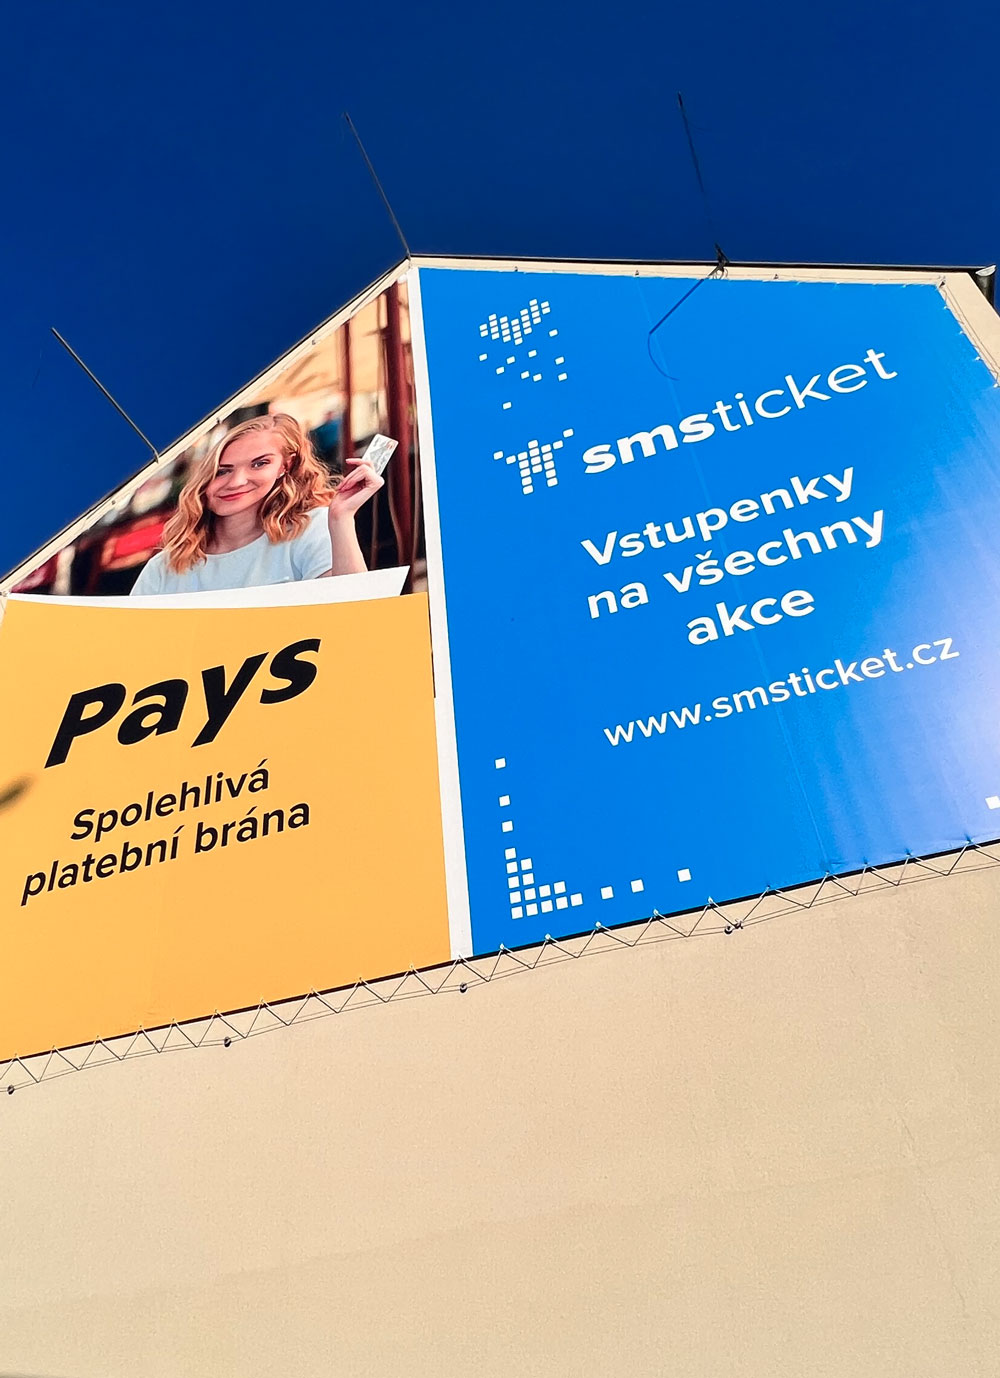 Venkovni-reklamni-plocha-Brno-Otakara-Sevcika-050ZB-Pays-SMSticket-01